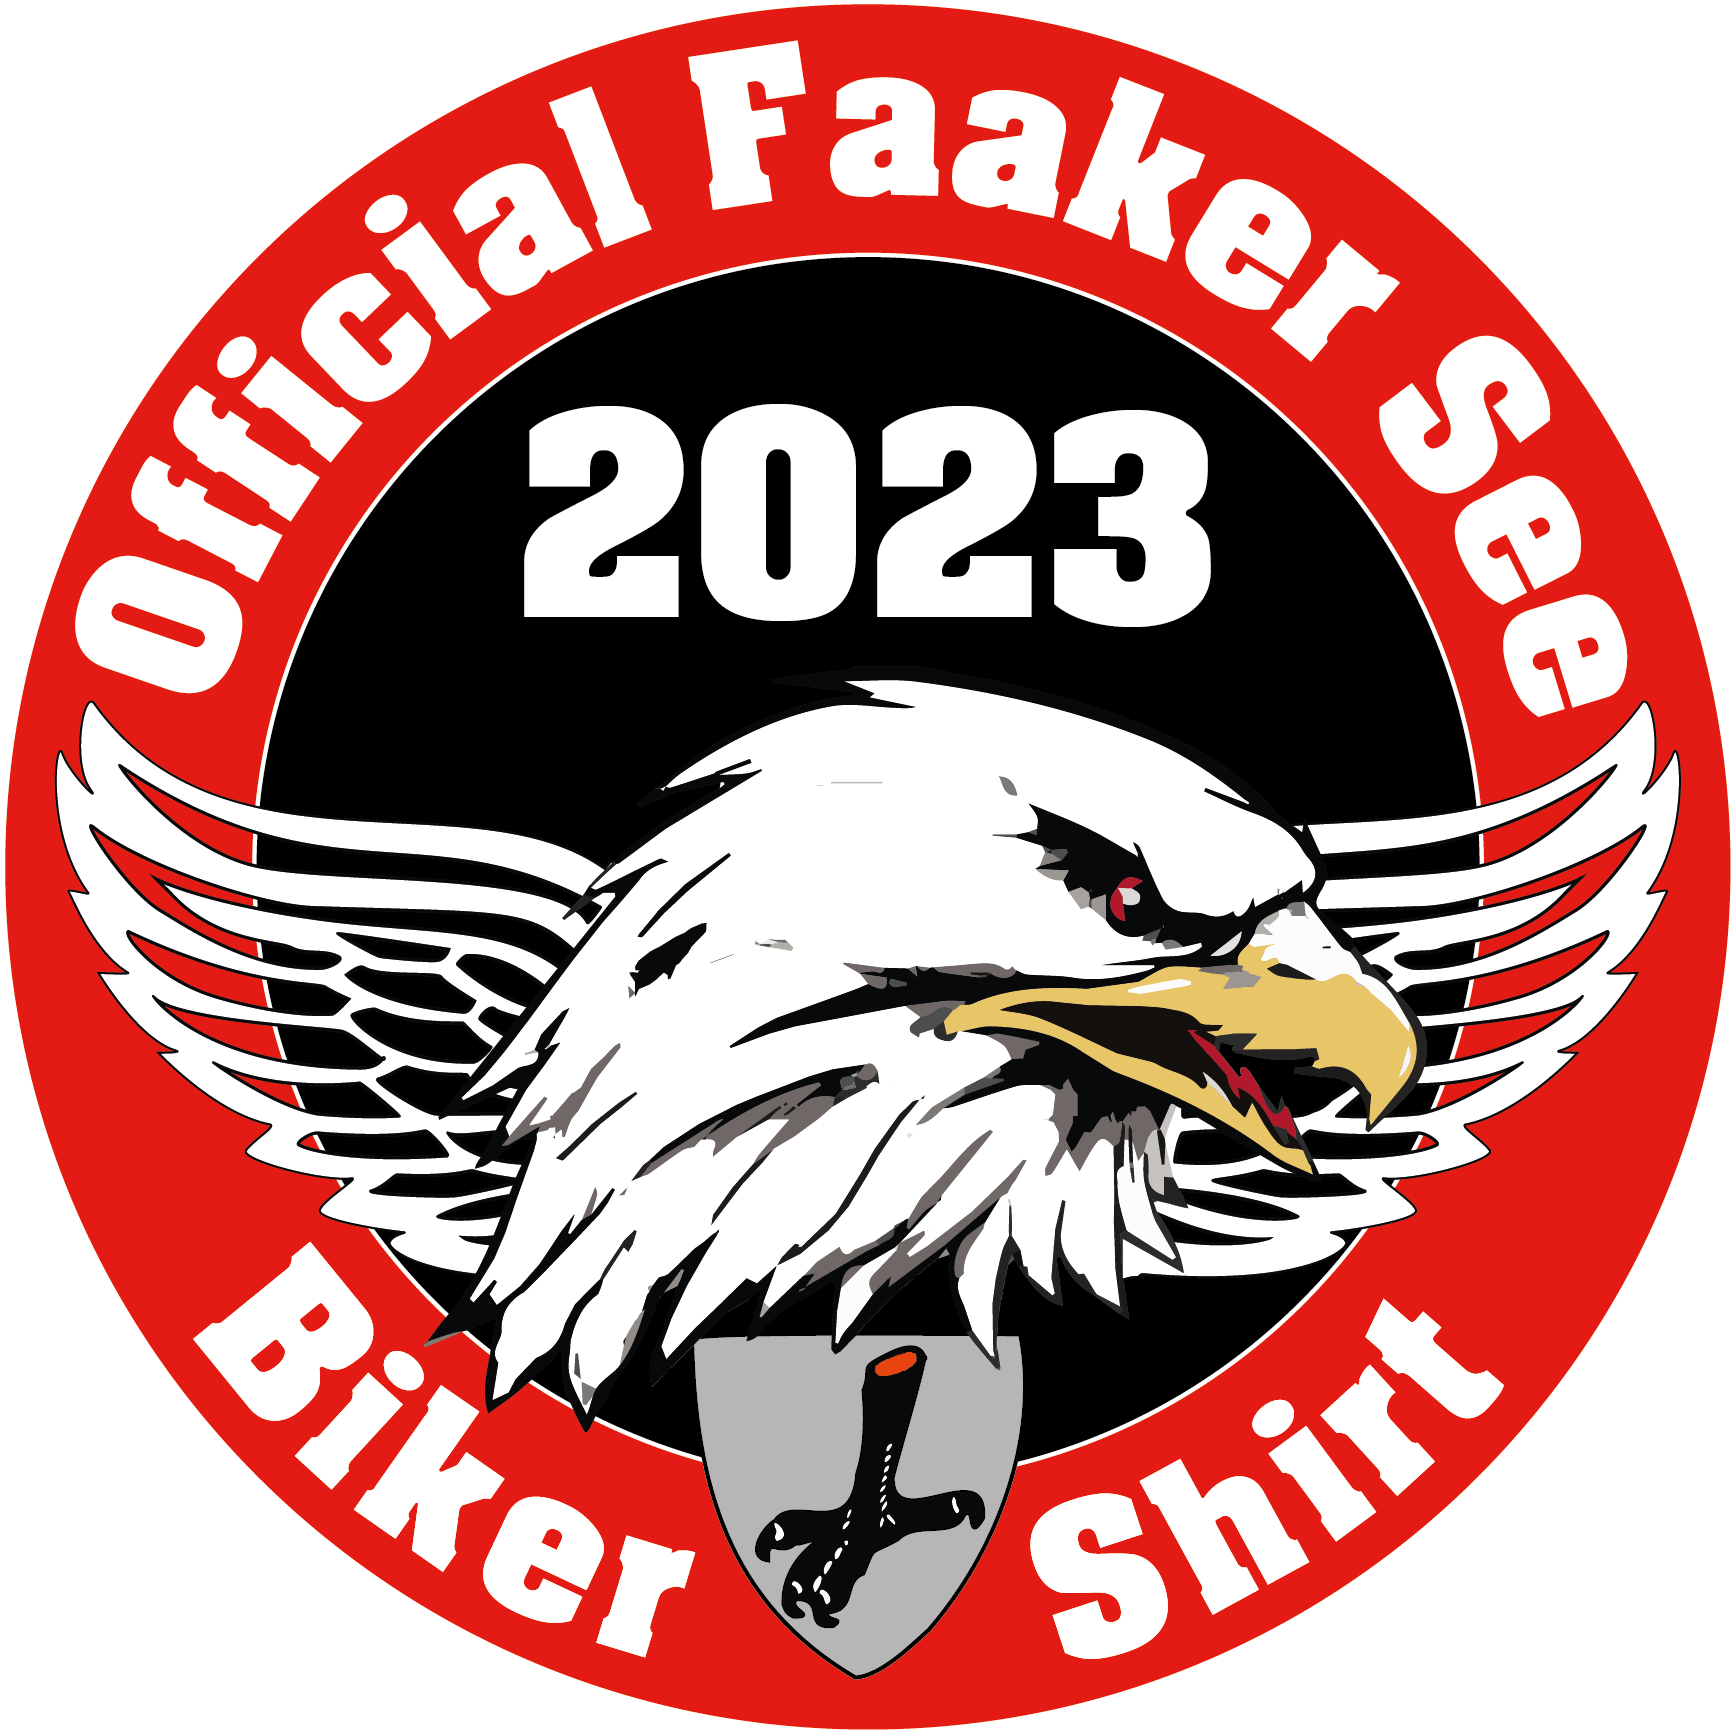 Official Faaker See Biker Shirt 2023